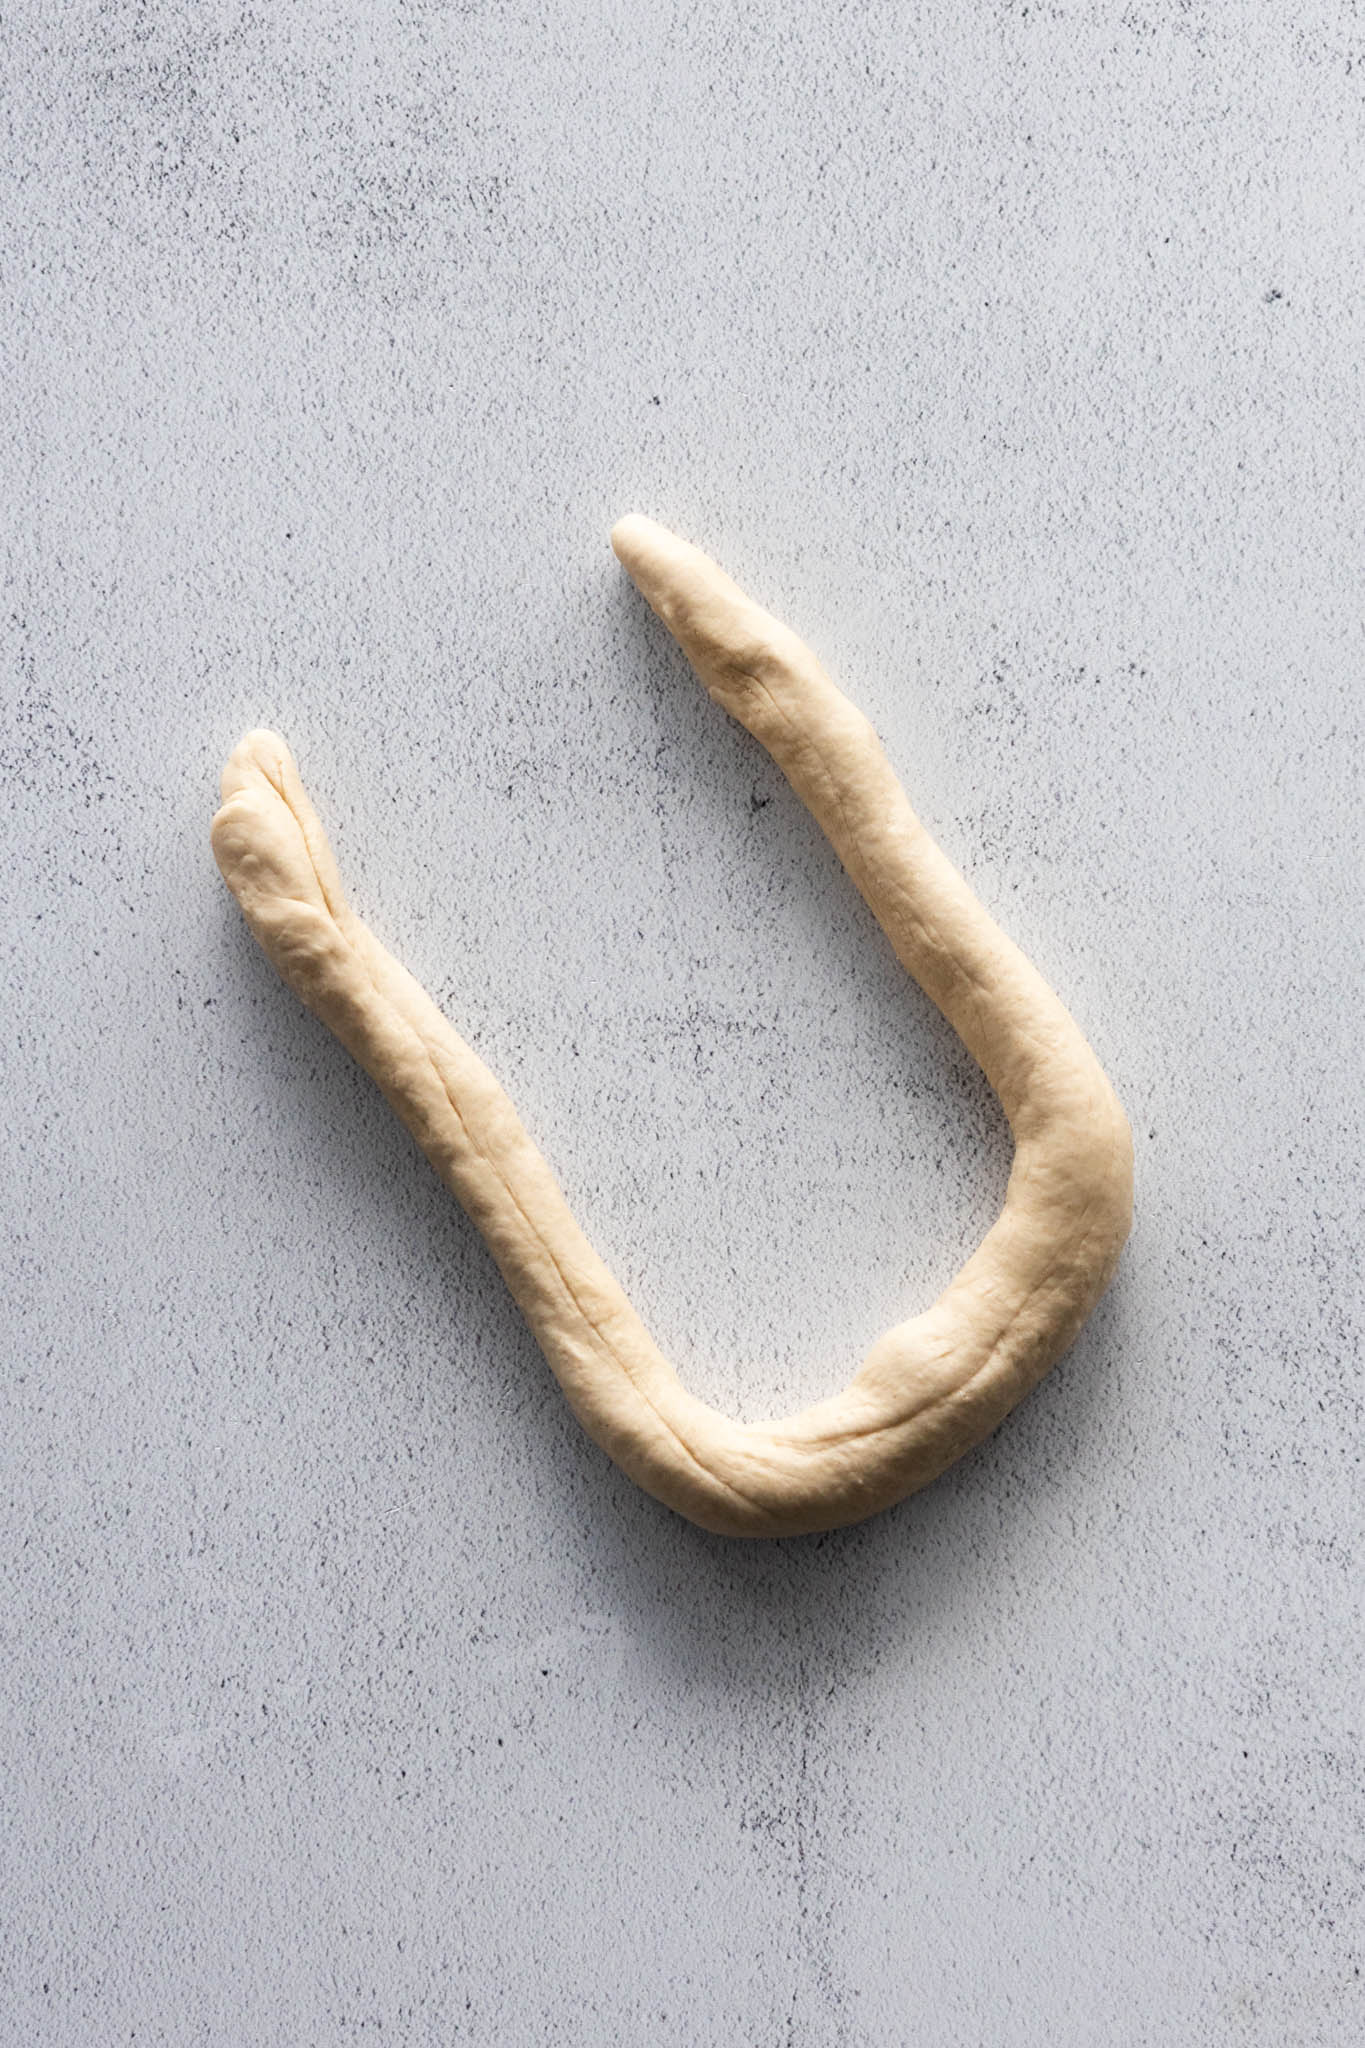 Create a U-shaped rope to make the pretzel shape.